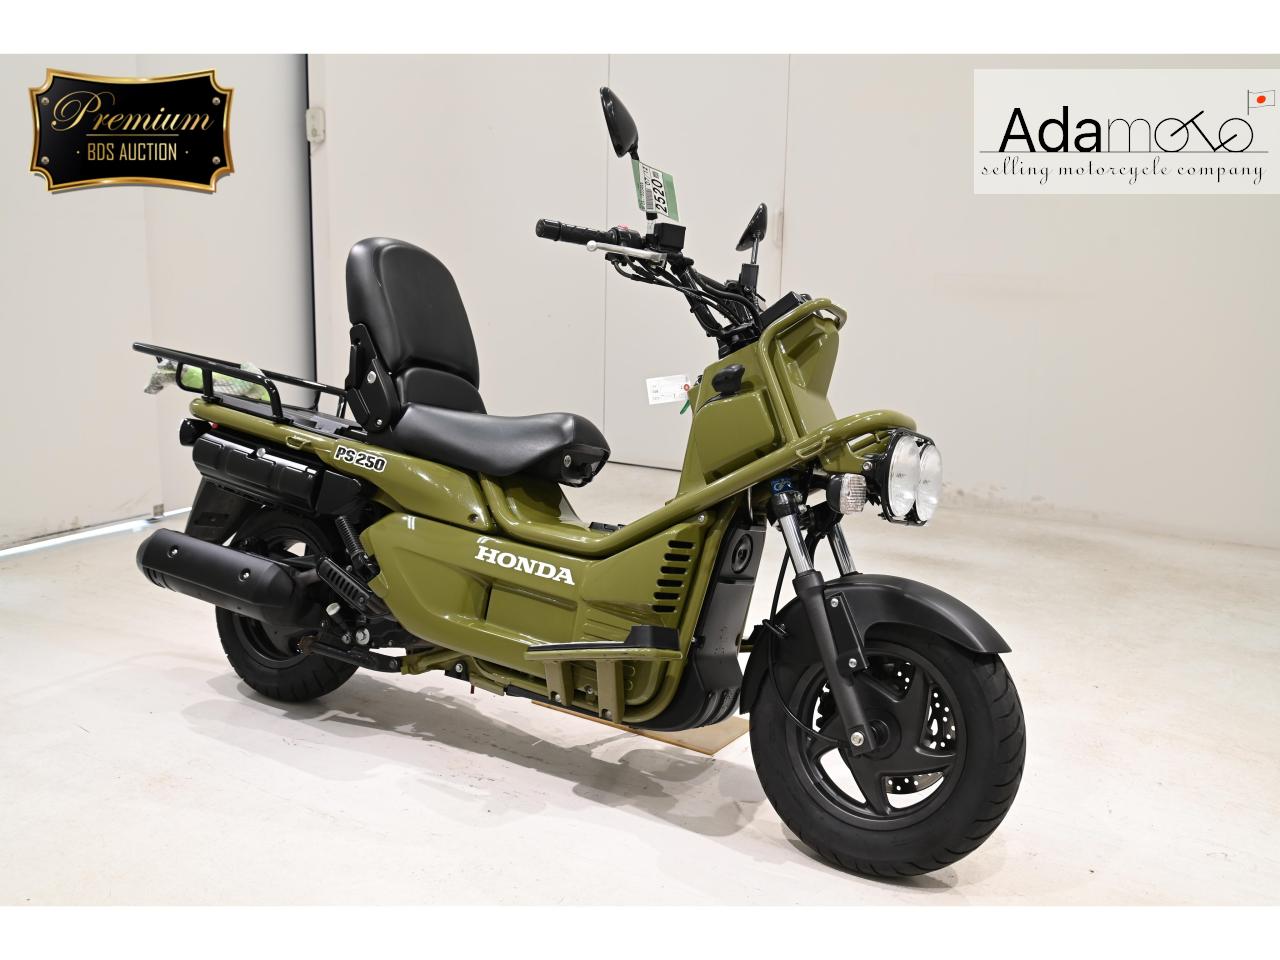 Honda PS250 - Adamoto - Motorcycles from Japan